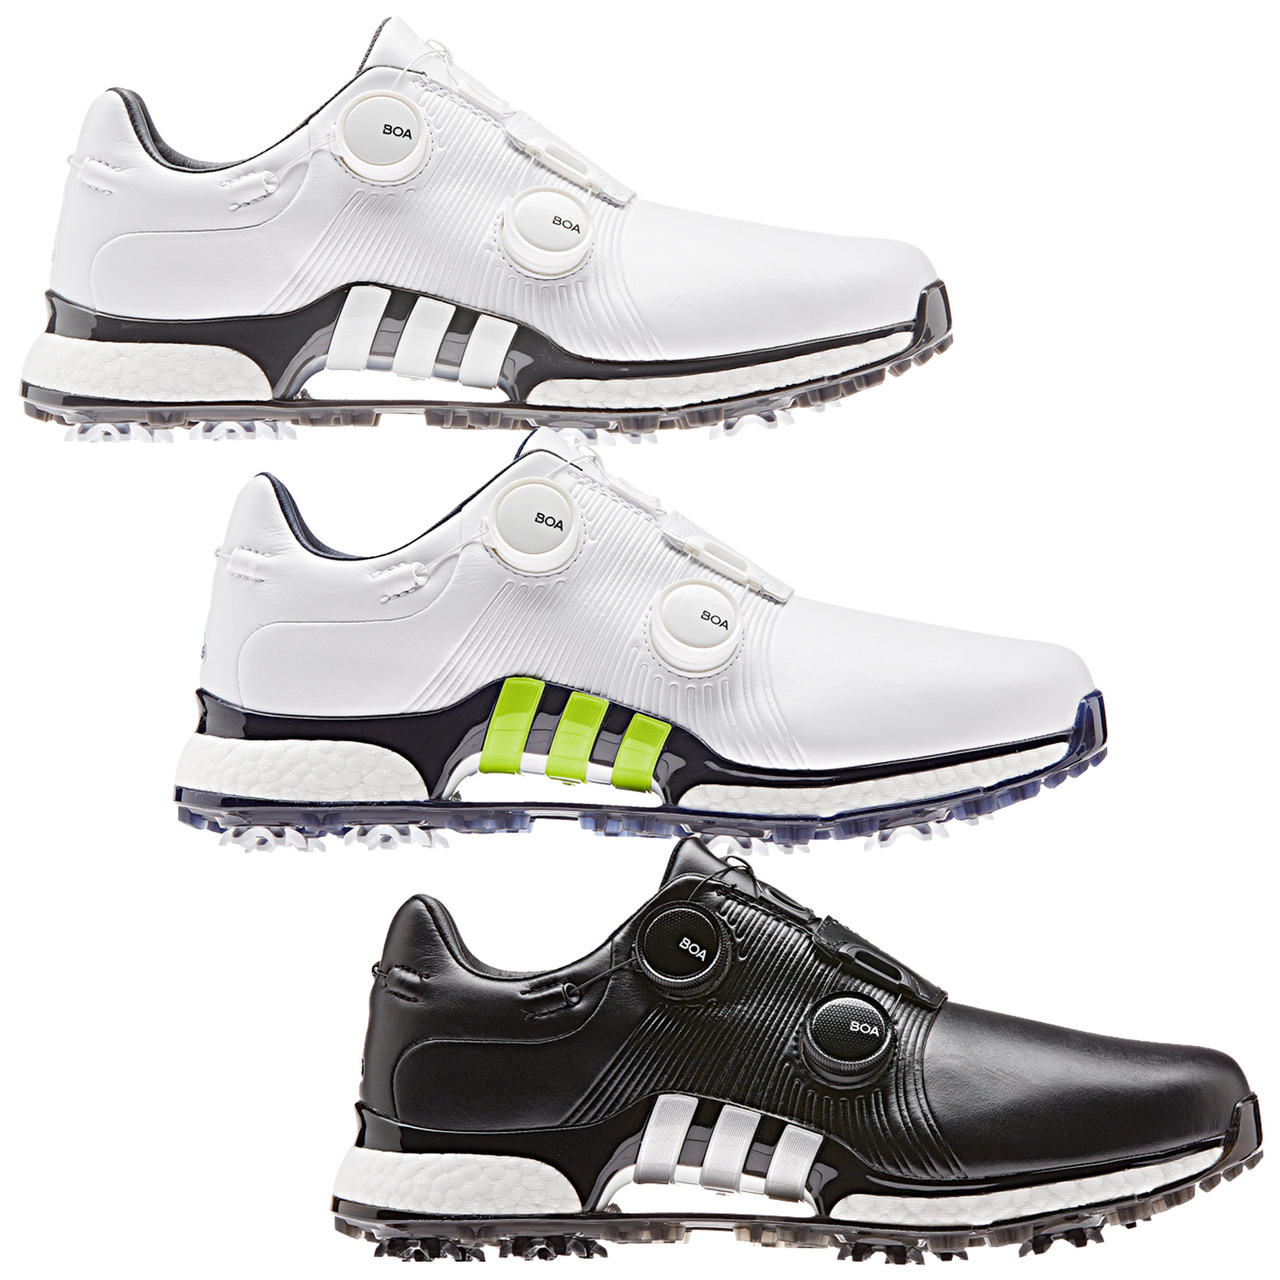 Adidas Tour360 XT Twin BOA Golf Shoe Review